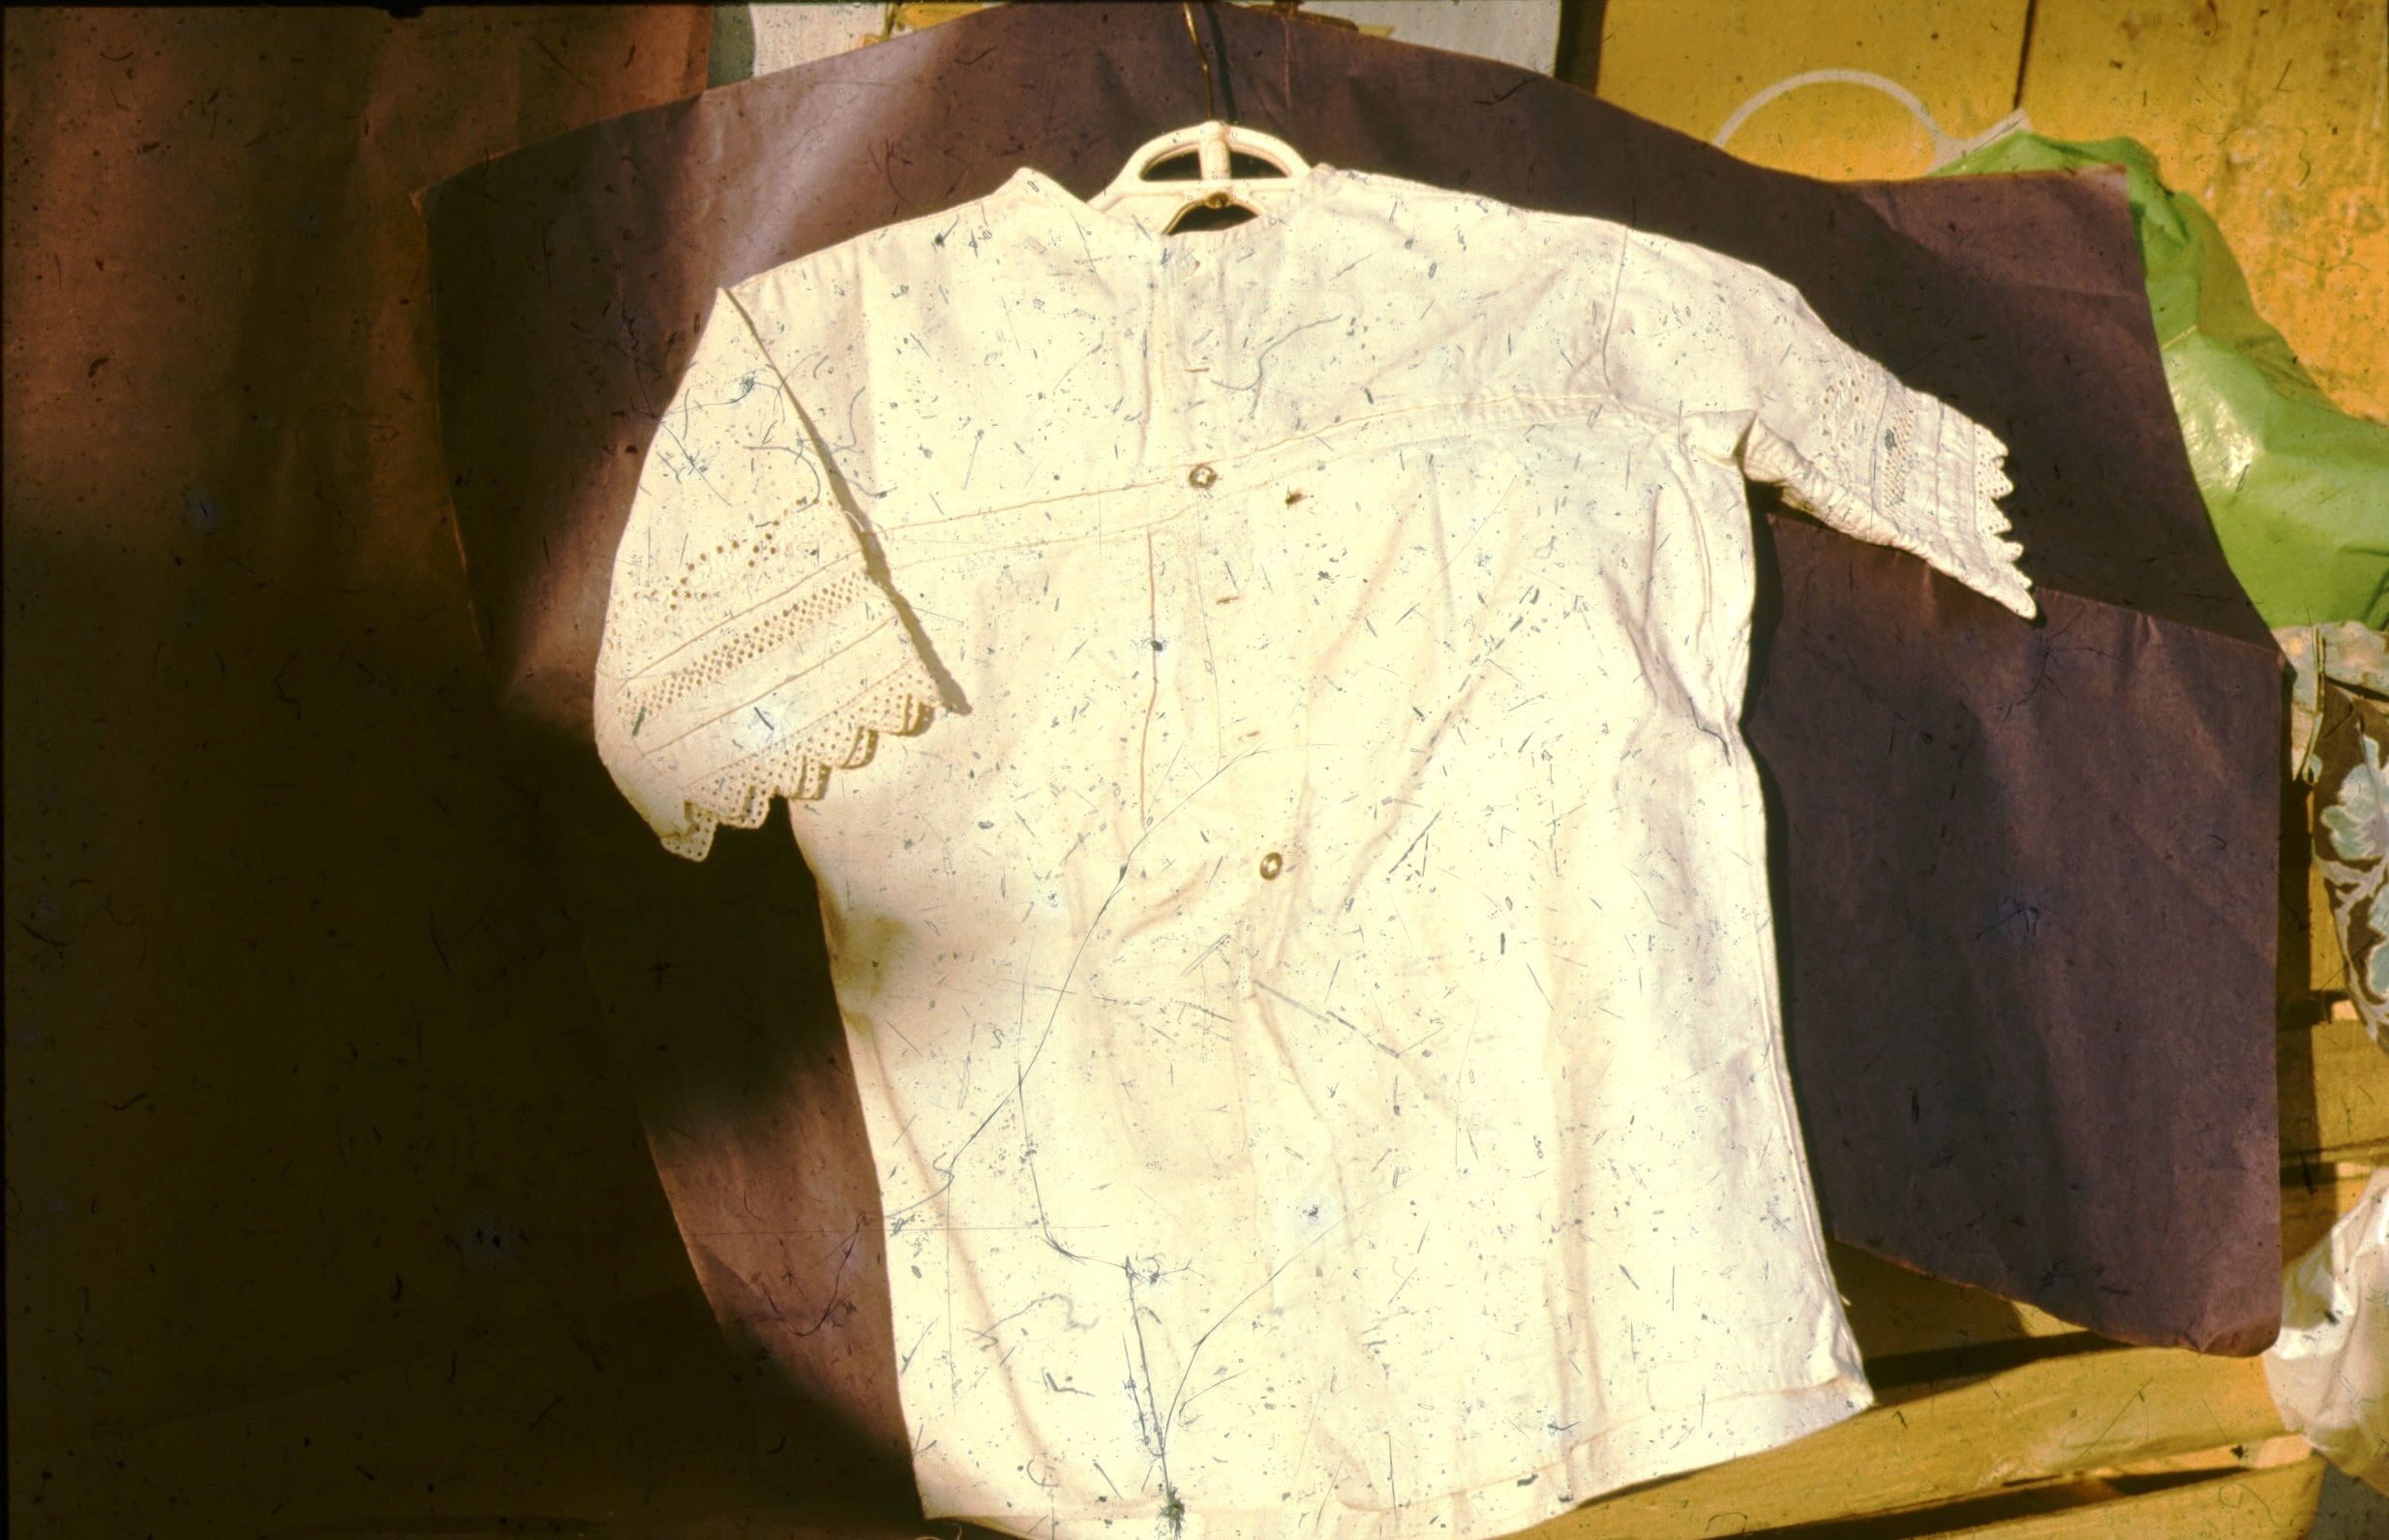 Törökkopányi fehérhímzéses női ing (Rippl-Rónai Múzeum CC BY-NC-ND)